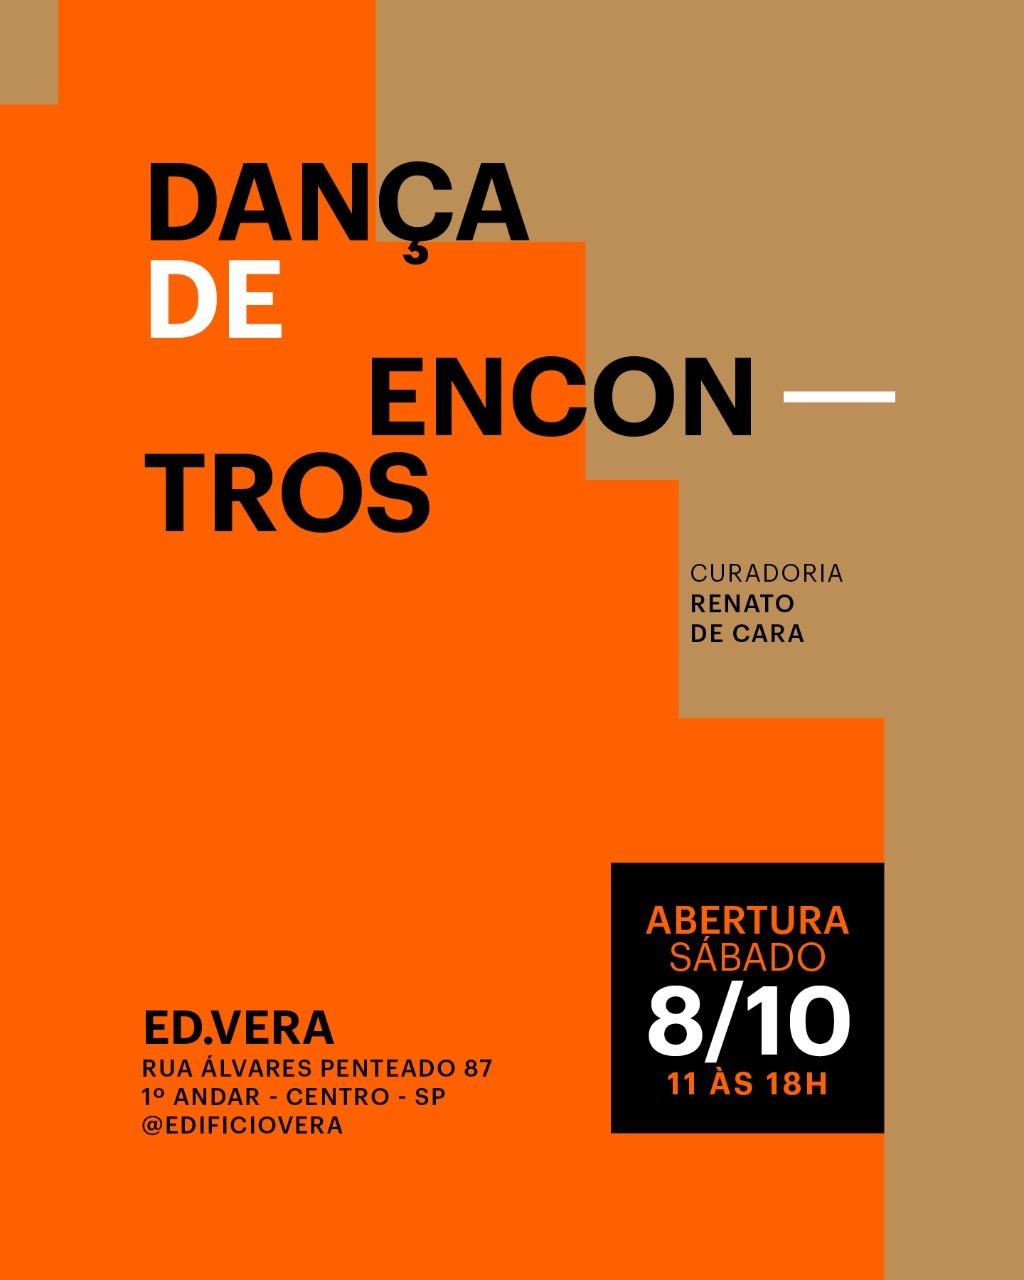 Exposição “Dança dos Encontros” vai até o dia 05 de novembro no Edifício Vera no centro histórico de São Paulo